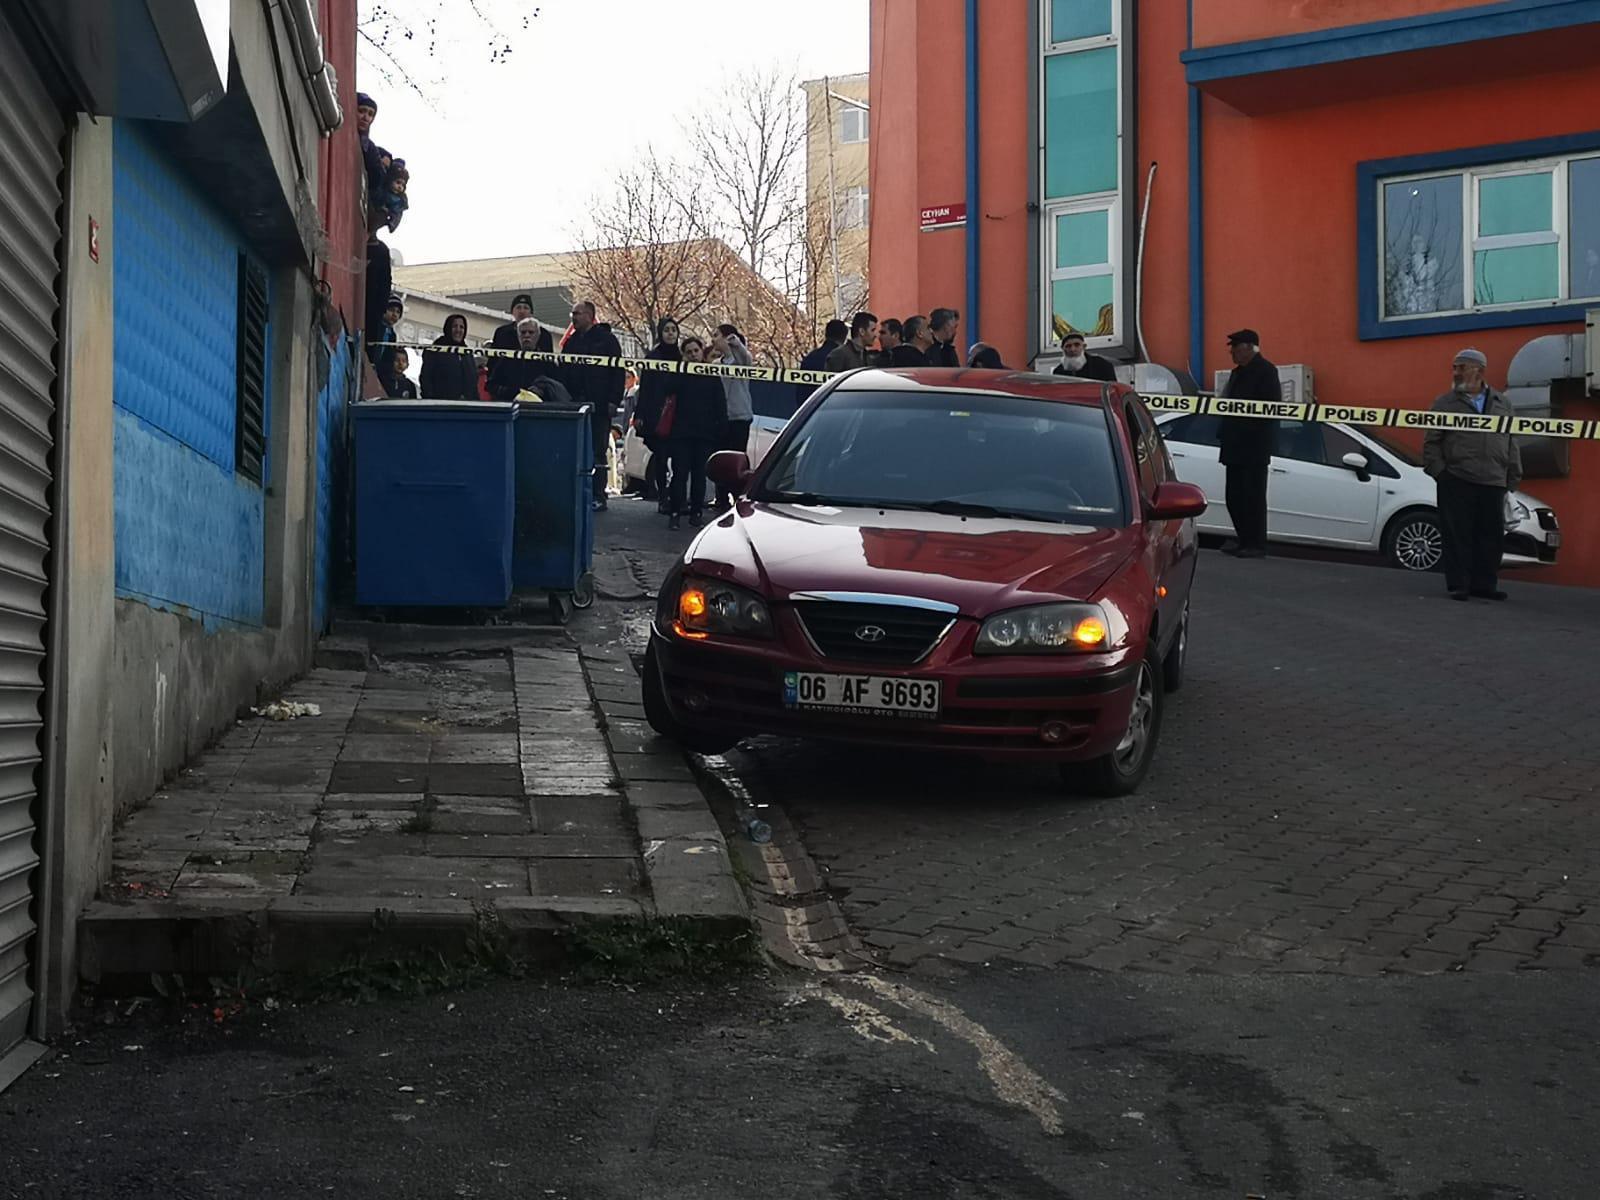 Üsküdarda korkunç kaza Otomobil kadını duvara sıkıştırdı